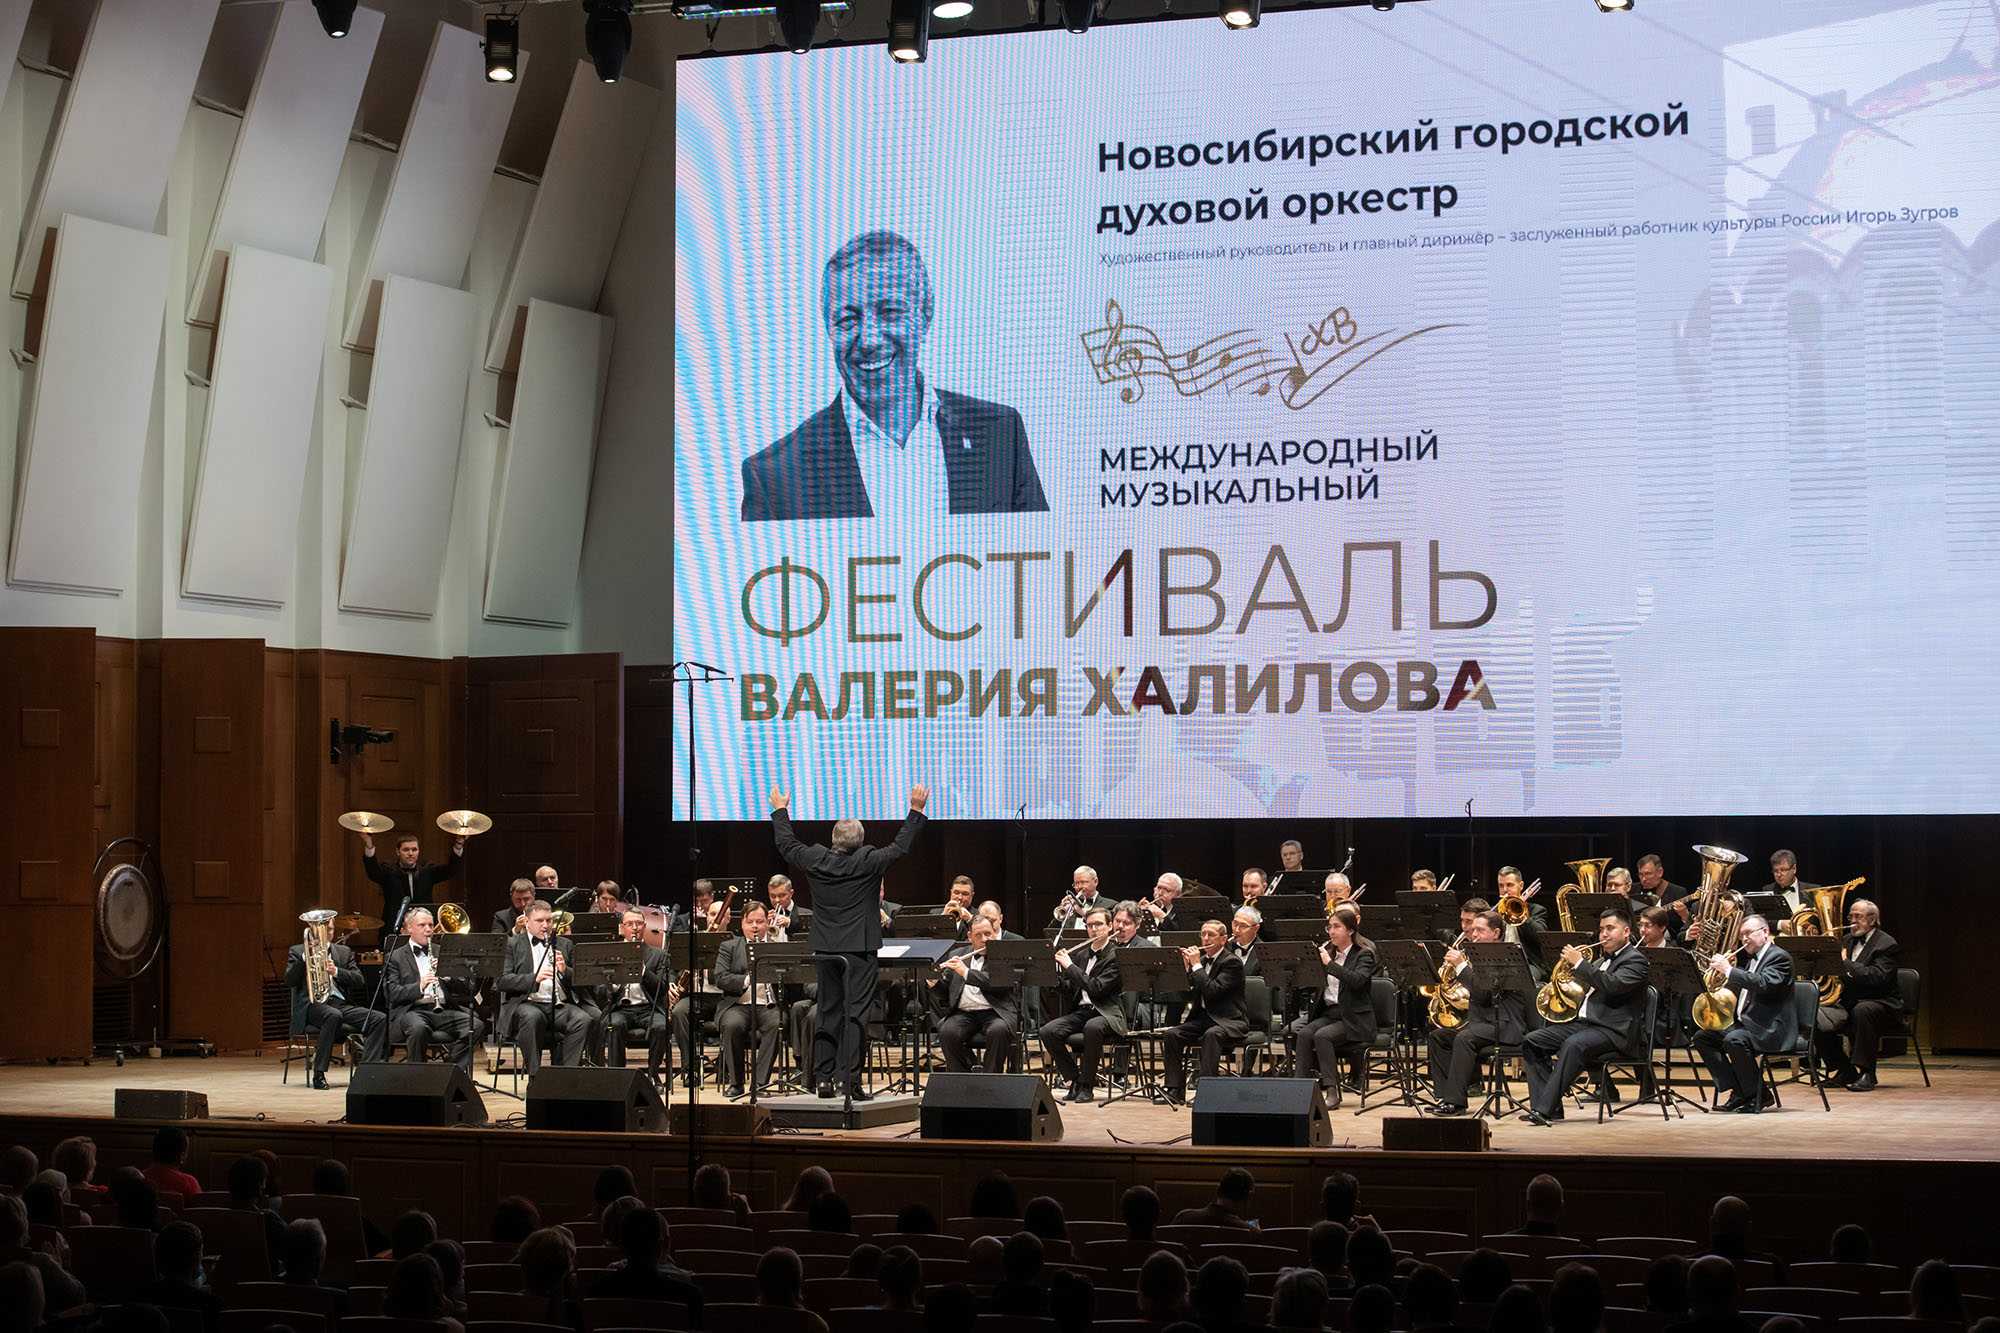 Валерий халилов: "духовой оркестр просто не может играть плохую музыку!"